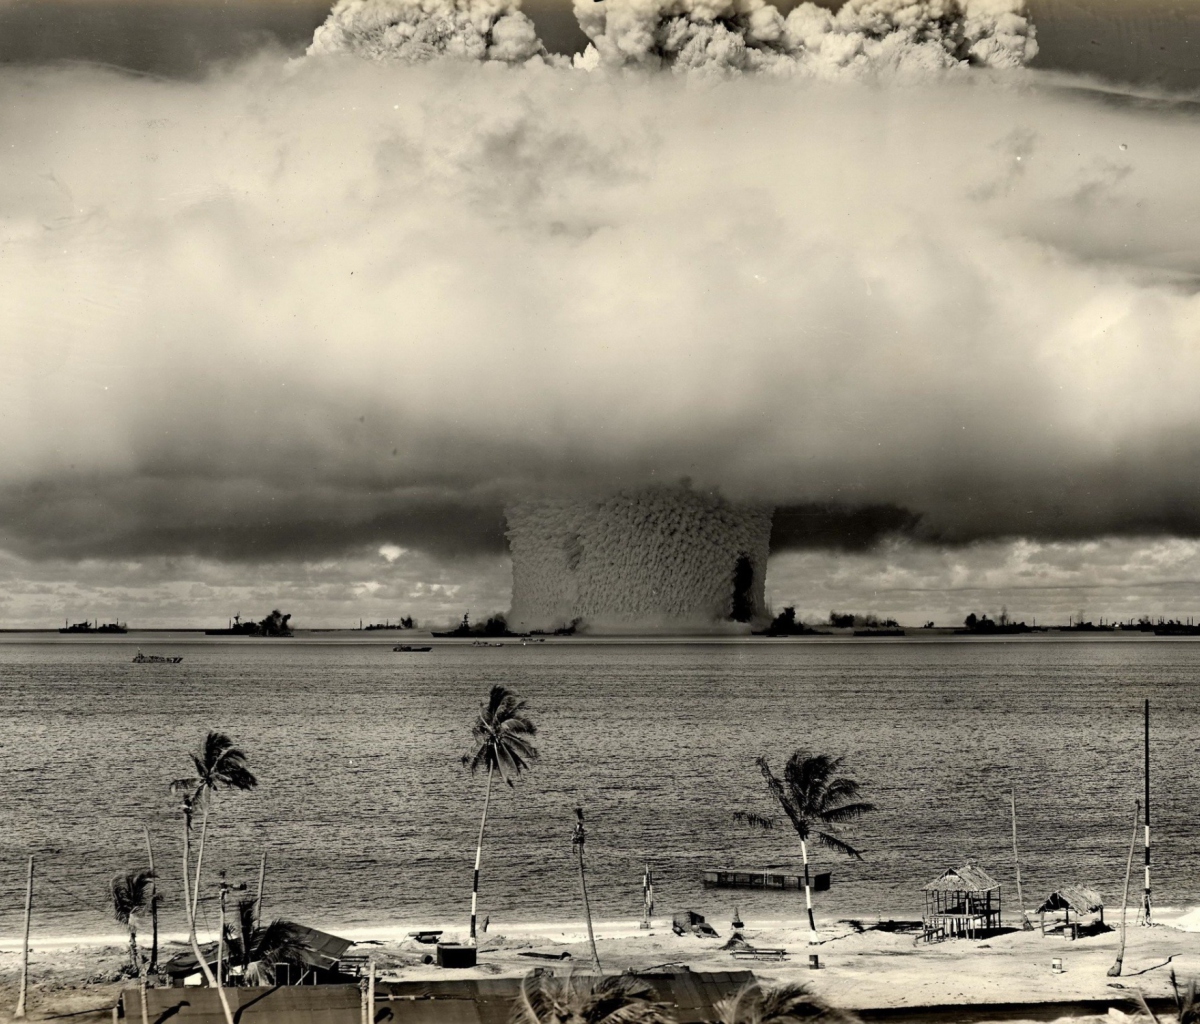 Das Nuclear Bomb Near The Beach Wallpaper 1200x1024